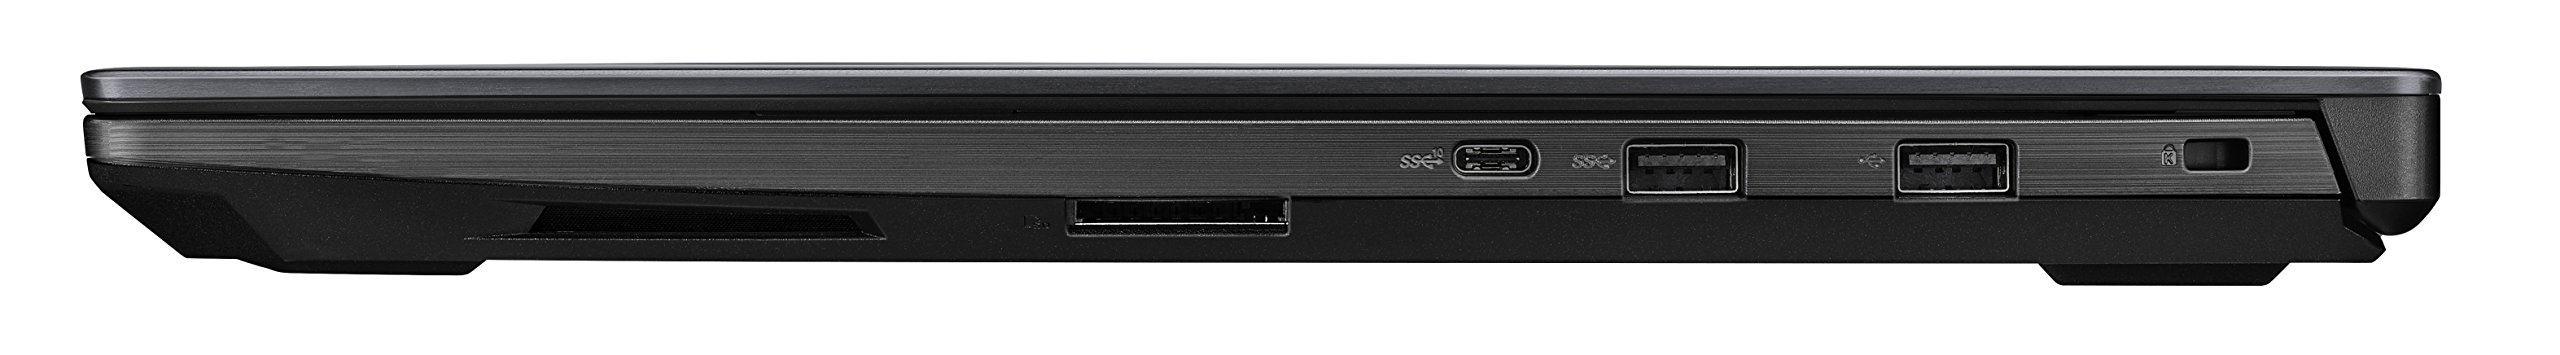 ASUS ROG Strix Scar Edition 17.3” 120Hz 3ms Gaming Laptop, 8th-Gen Intel Core i7-8750H Processor (up to 3.9GHz), GTX 1050 Ti 4GB, 16GB DDR4, 128GB PCIe SSD + 1TB Hybrid HDD, Windows 10 - GL703GE-ES73